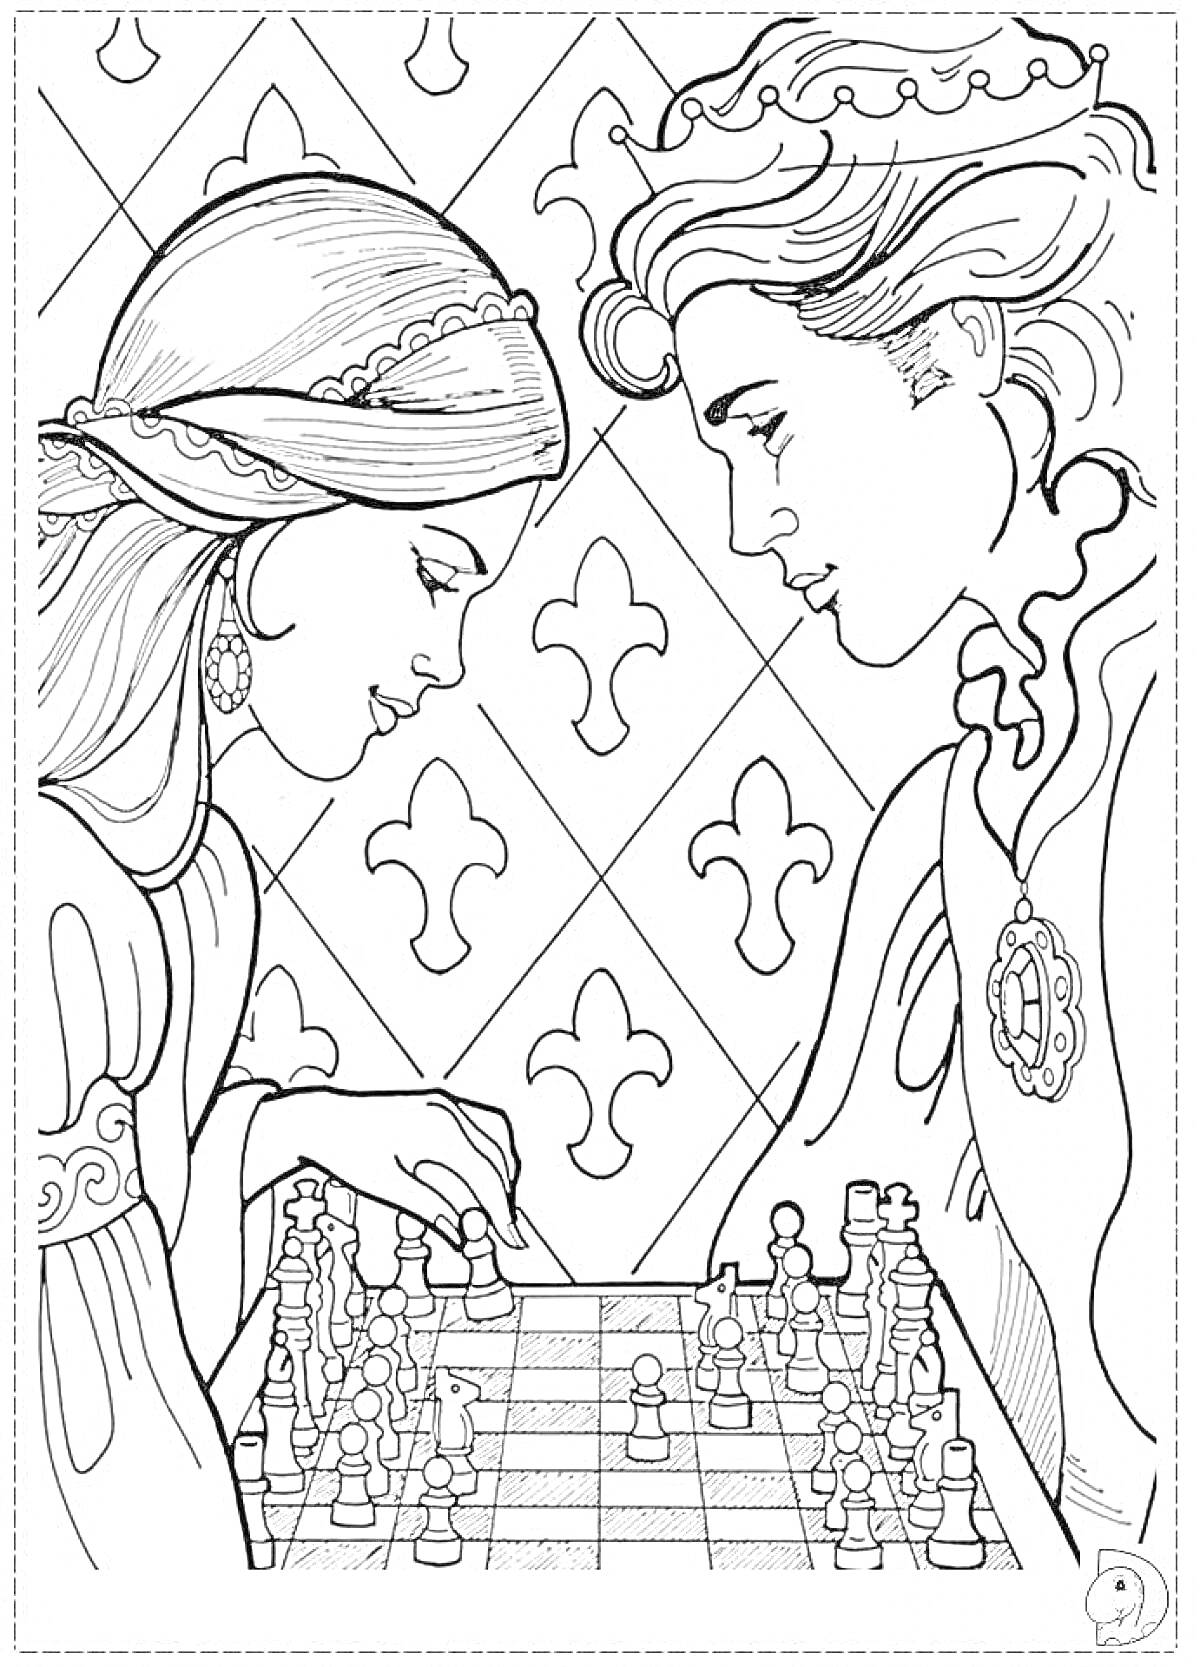 Два человека за шахматной доской на фоне с узорами